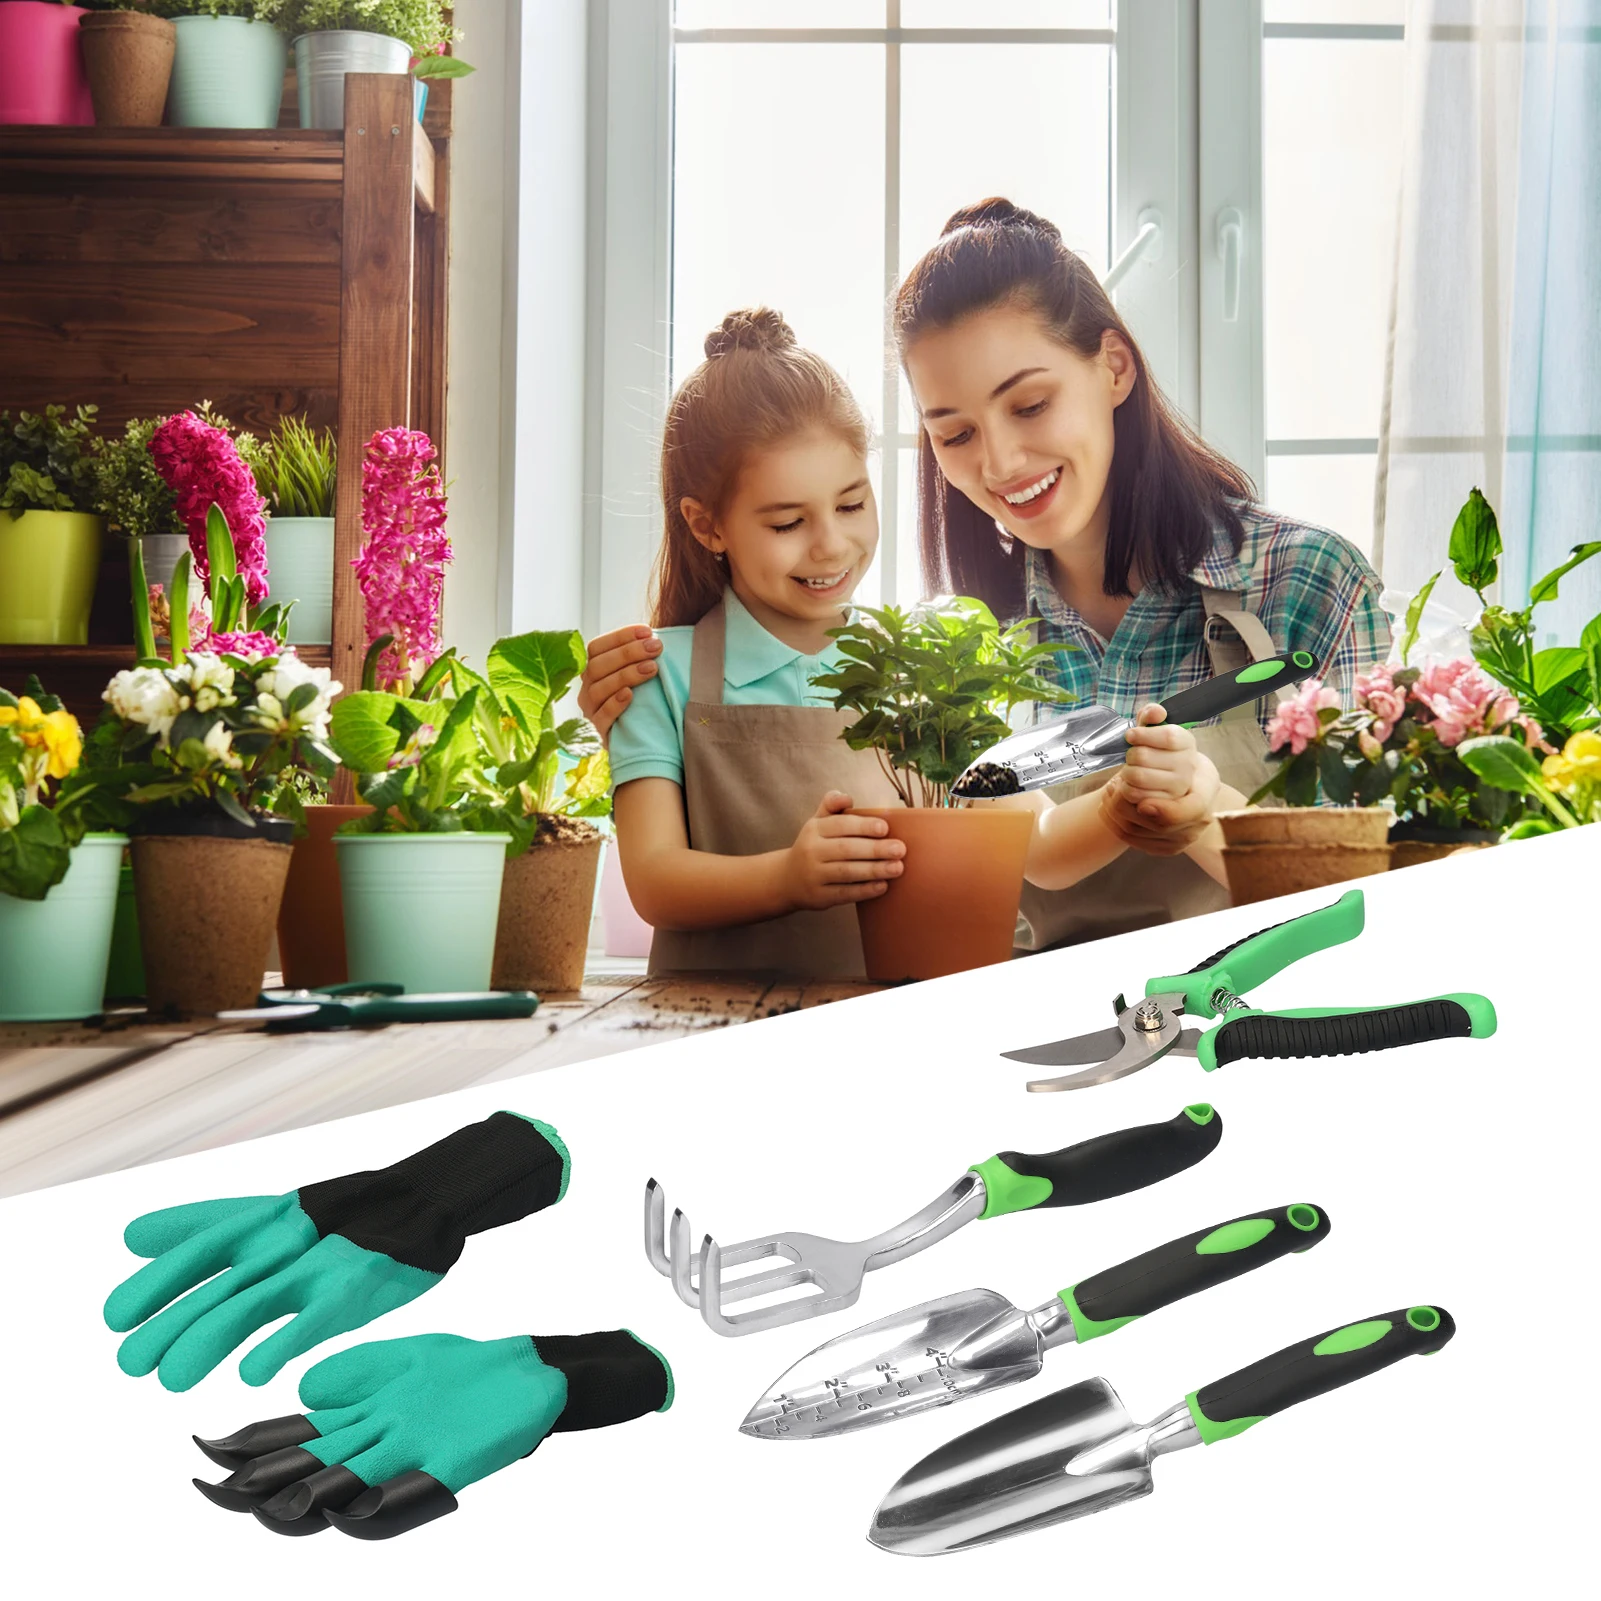 

5 PCS/Set Gardening Tool Set Non-Slip Handle Garden Tools Metal Garden Gadget Contains Gloves Trowel Shovel Pruning Shear Rake